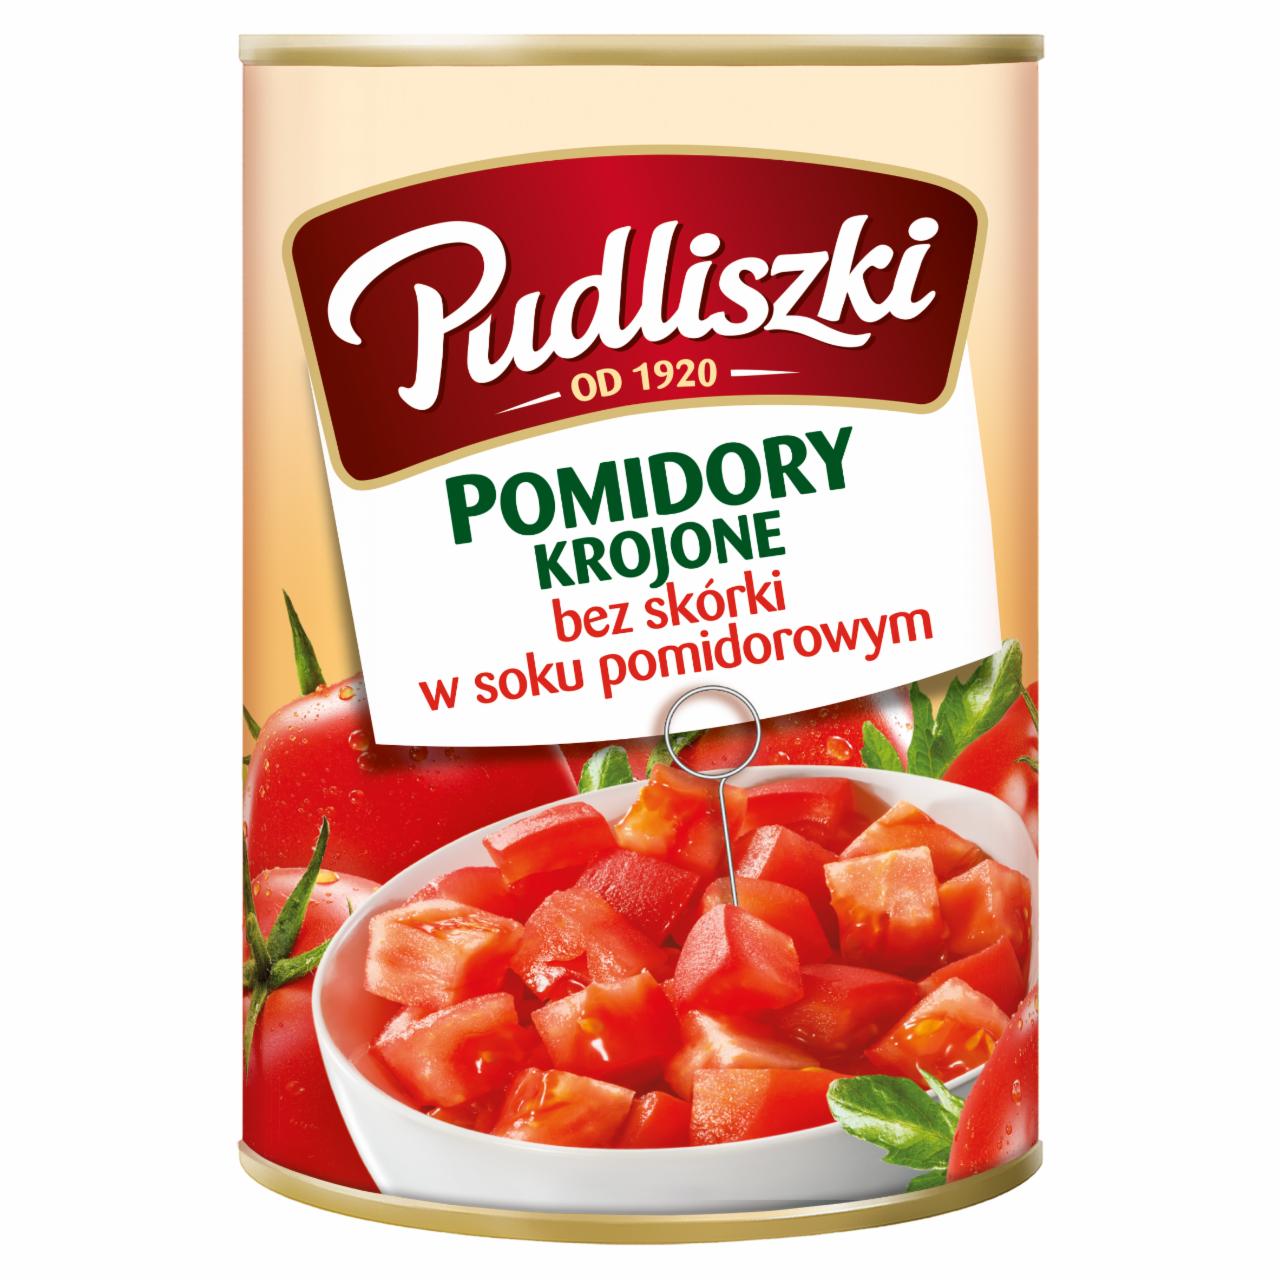 Zdjęcia - Pudliszki Pomidory krojone bez skórki w soku pomidorowym 400 g